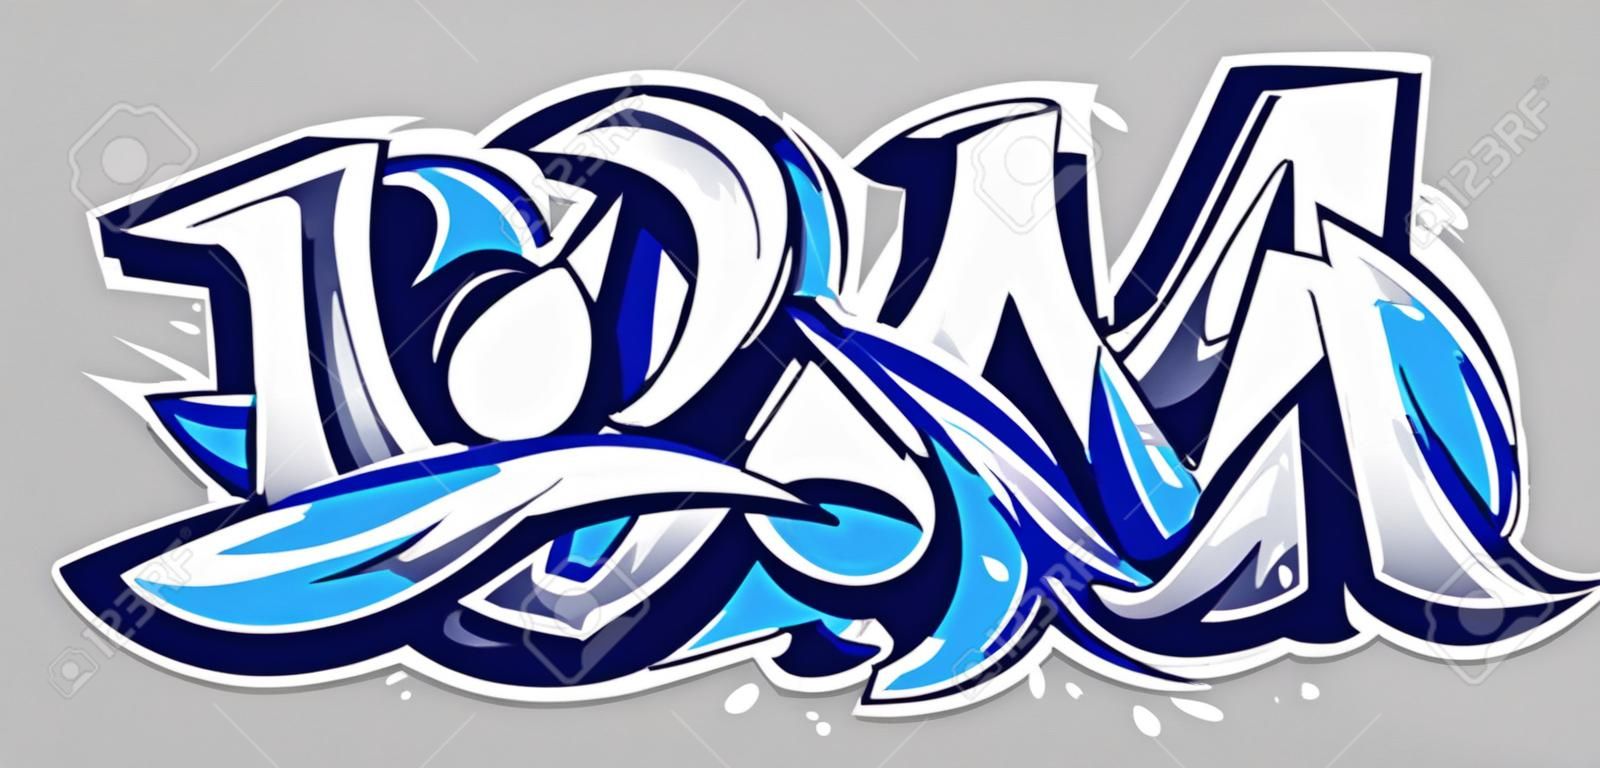 Big Up kék színű vektor betűkkel a szürke háttér. Dinamikus vad stílusú graffiti művészet. Három dimenziós betűk absztrakt illusztráció.